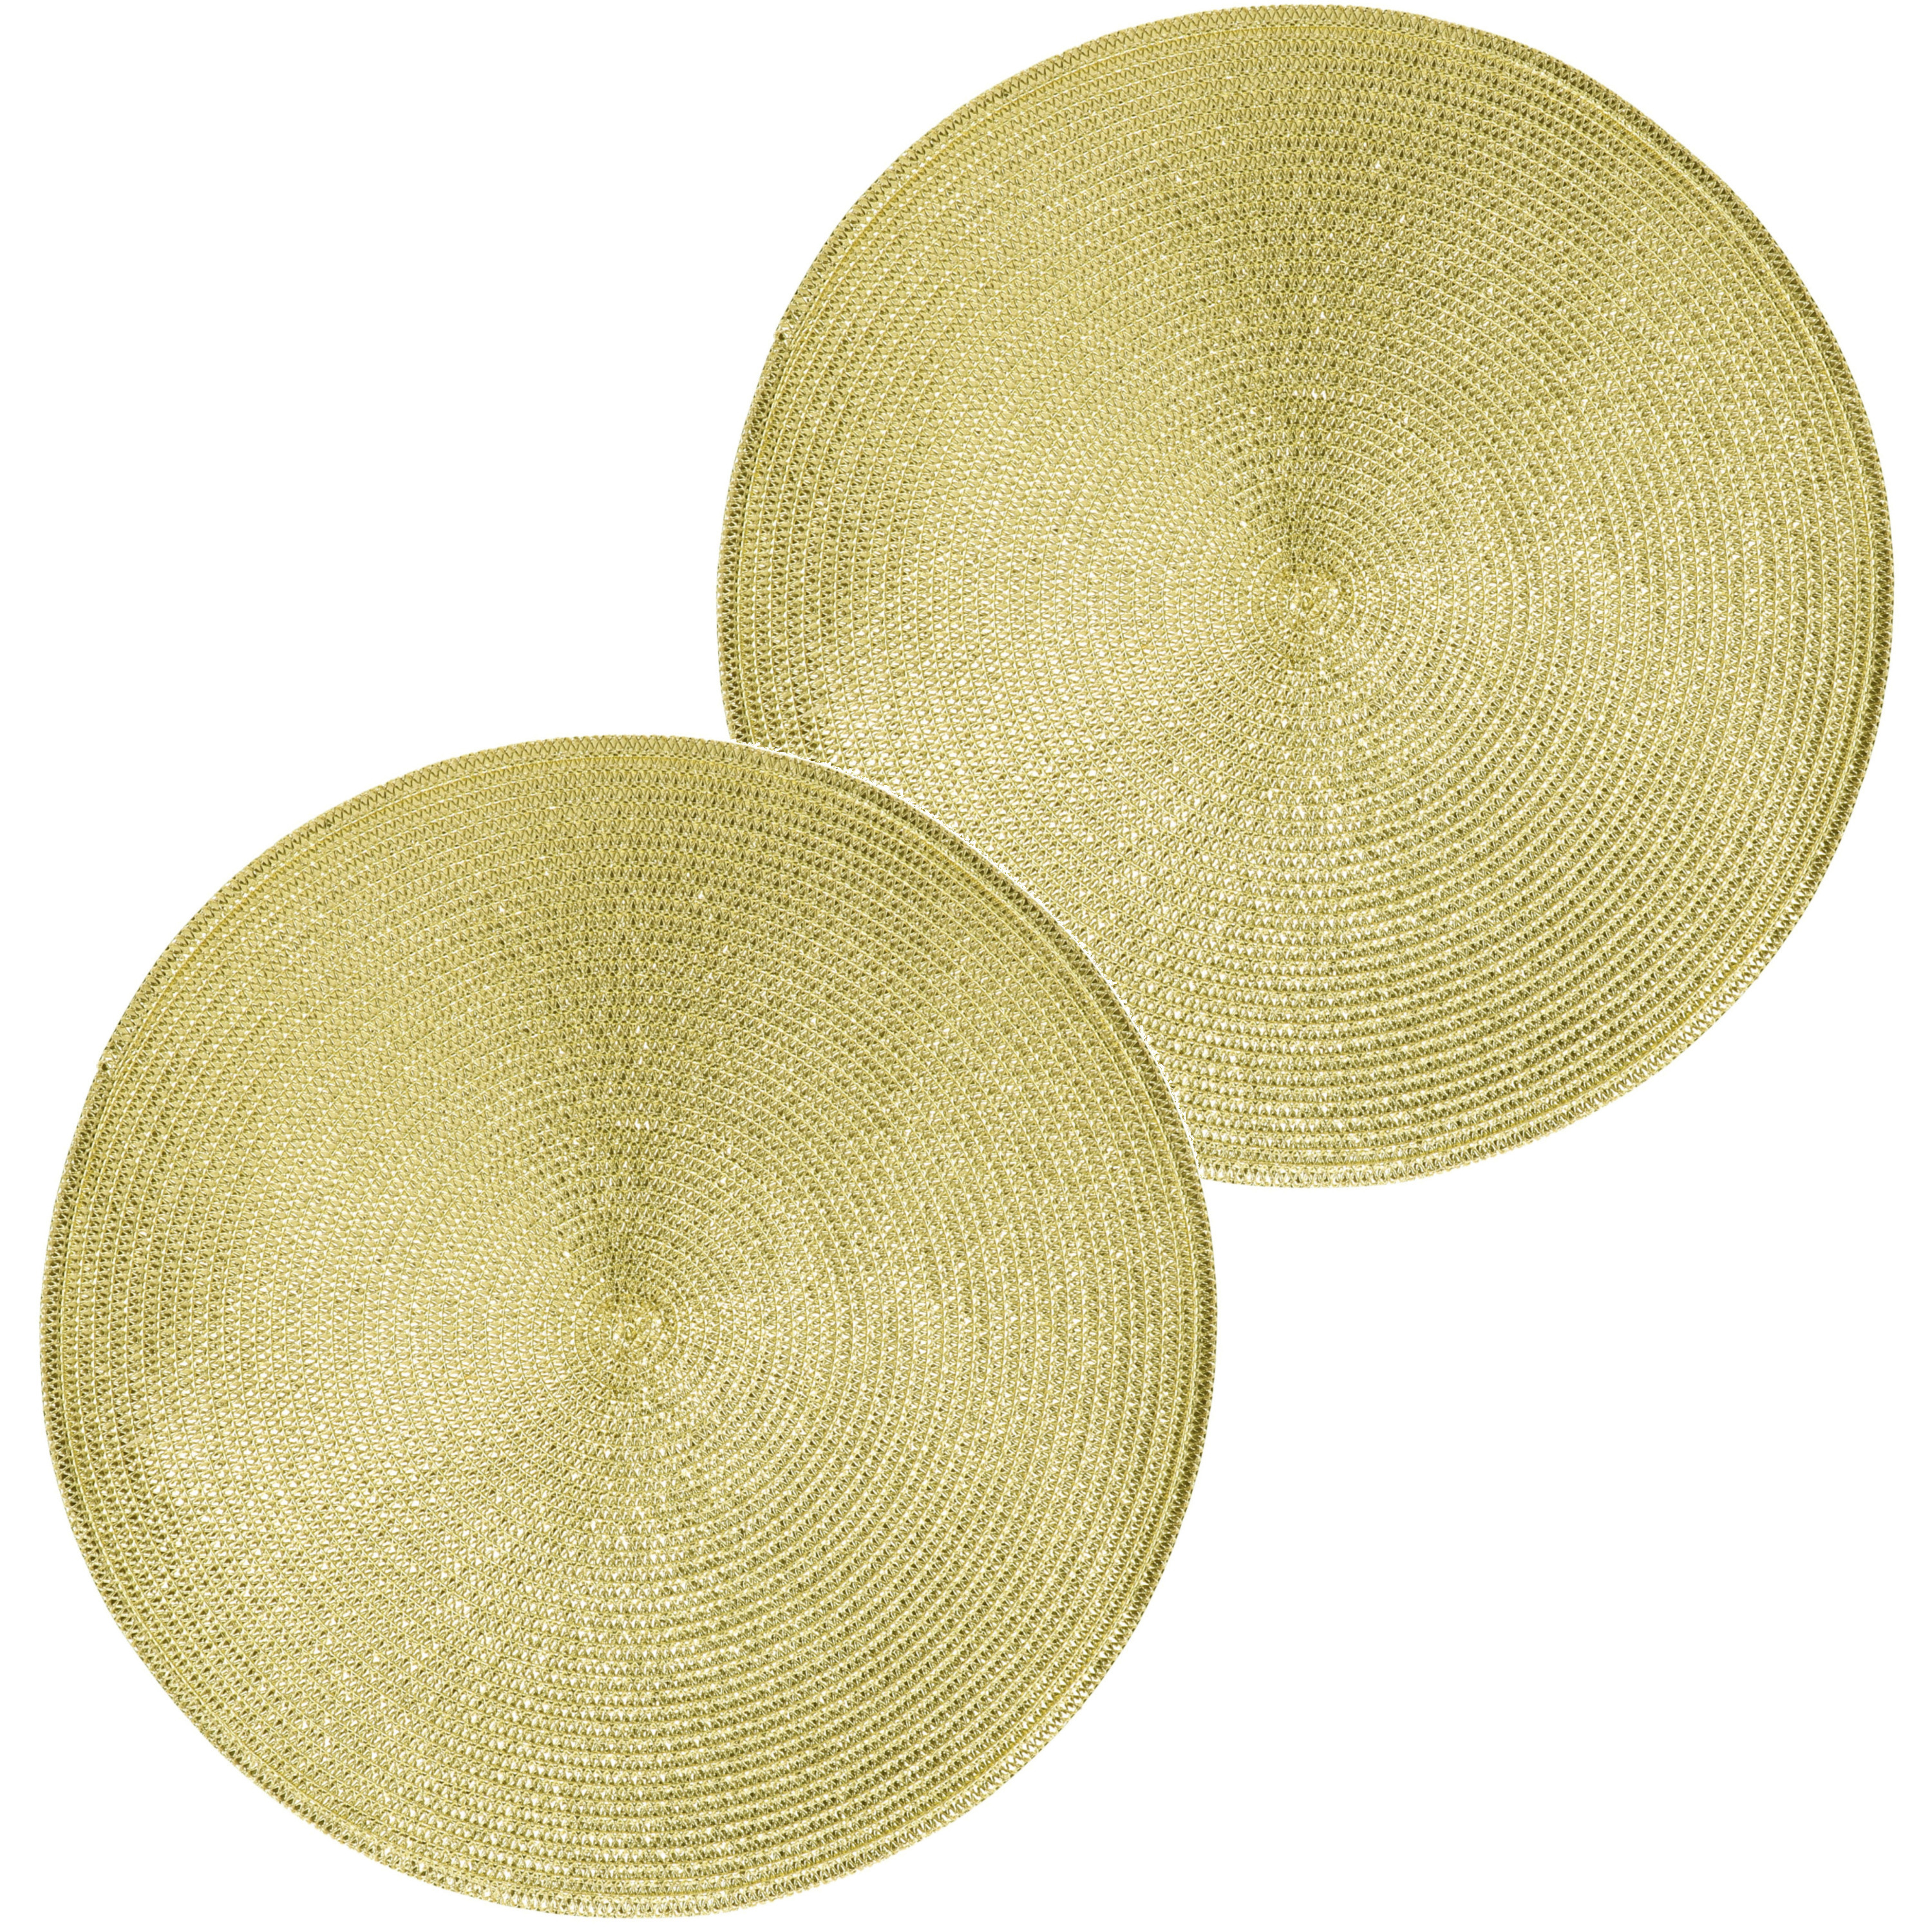 2x Ronde placemats glimmend goud 38 cm geweven/gevlochten